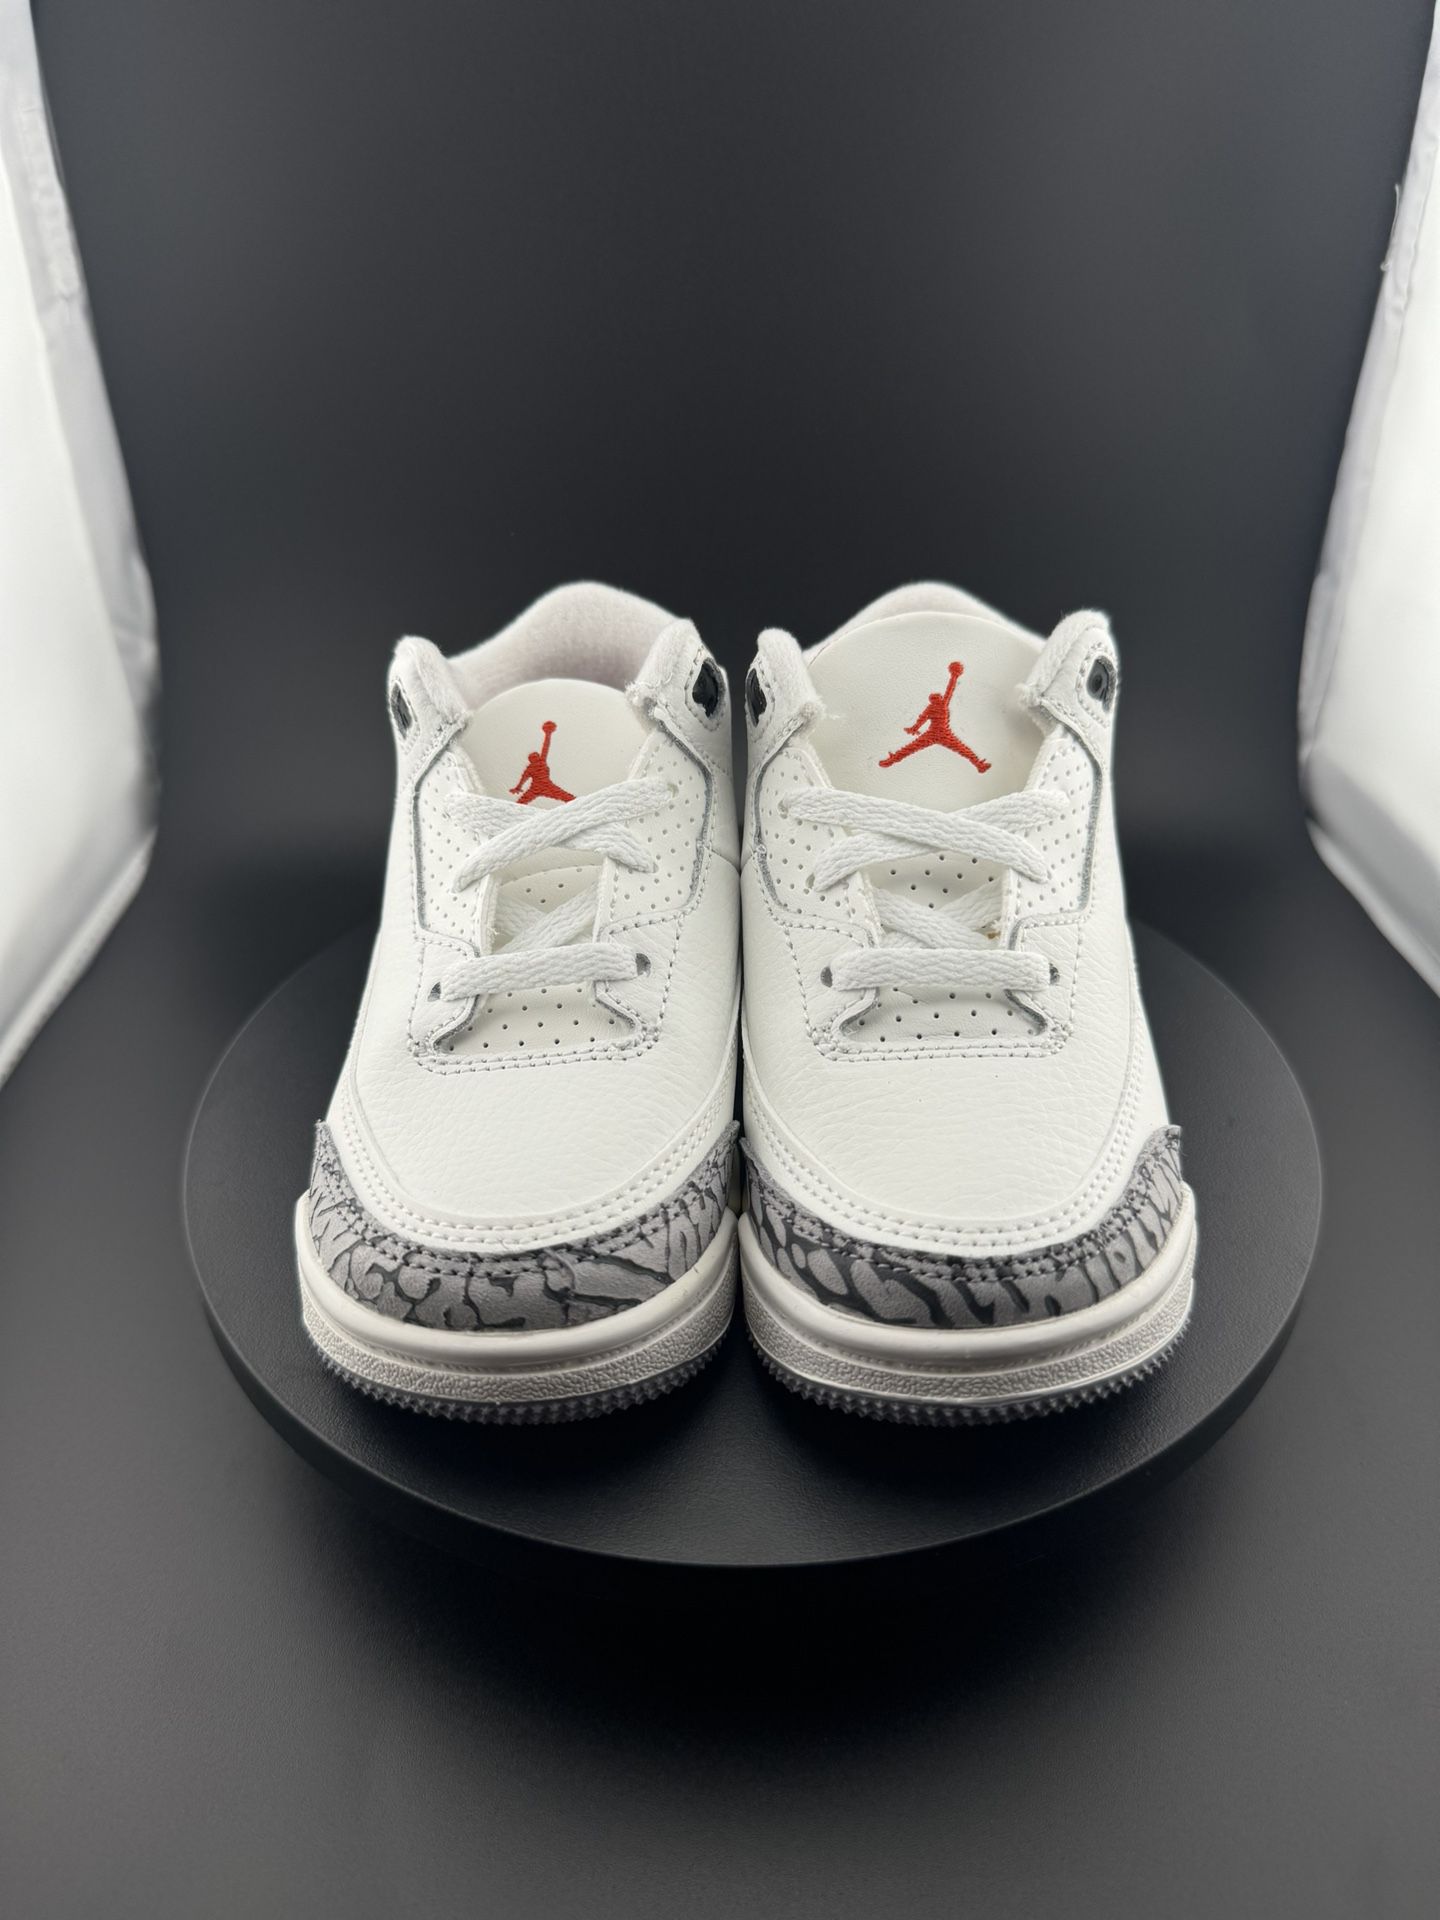 Jordan 3 Retro White Cement Reimagined (TD)